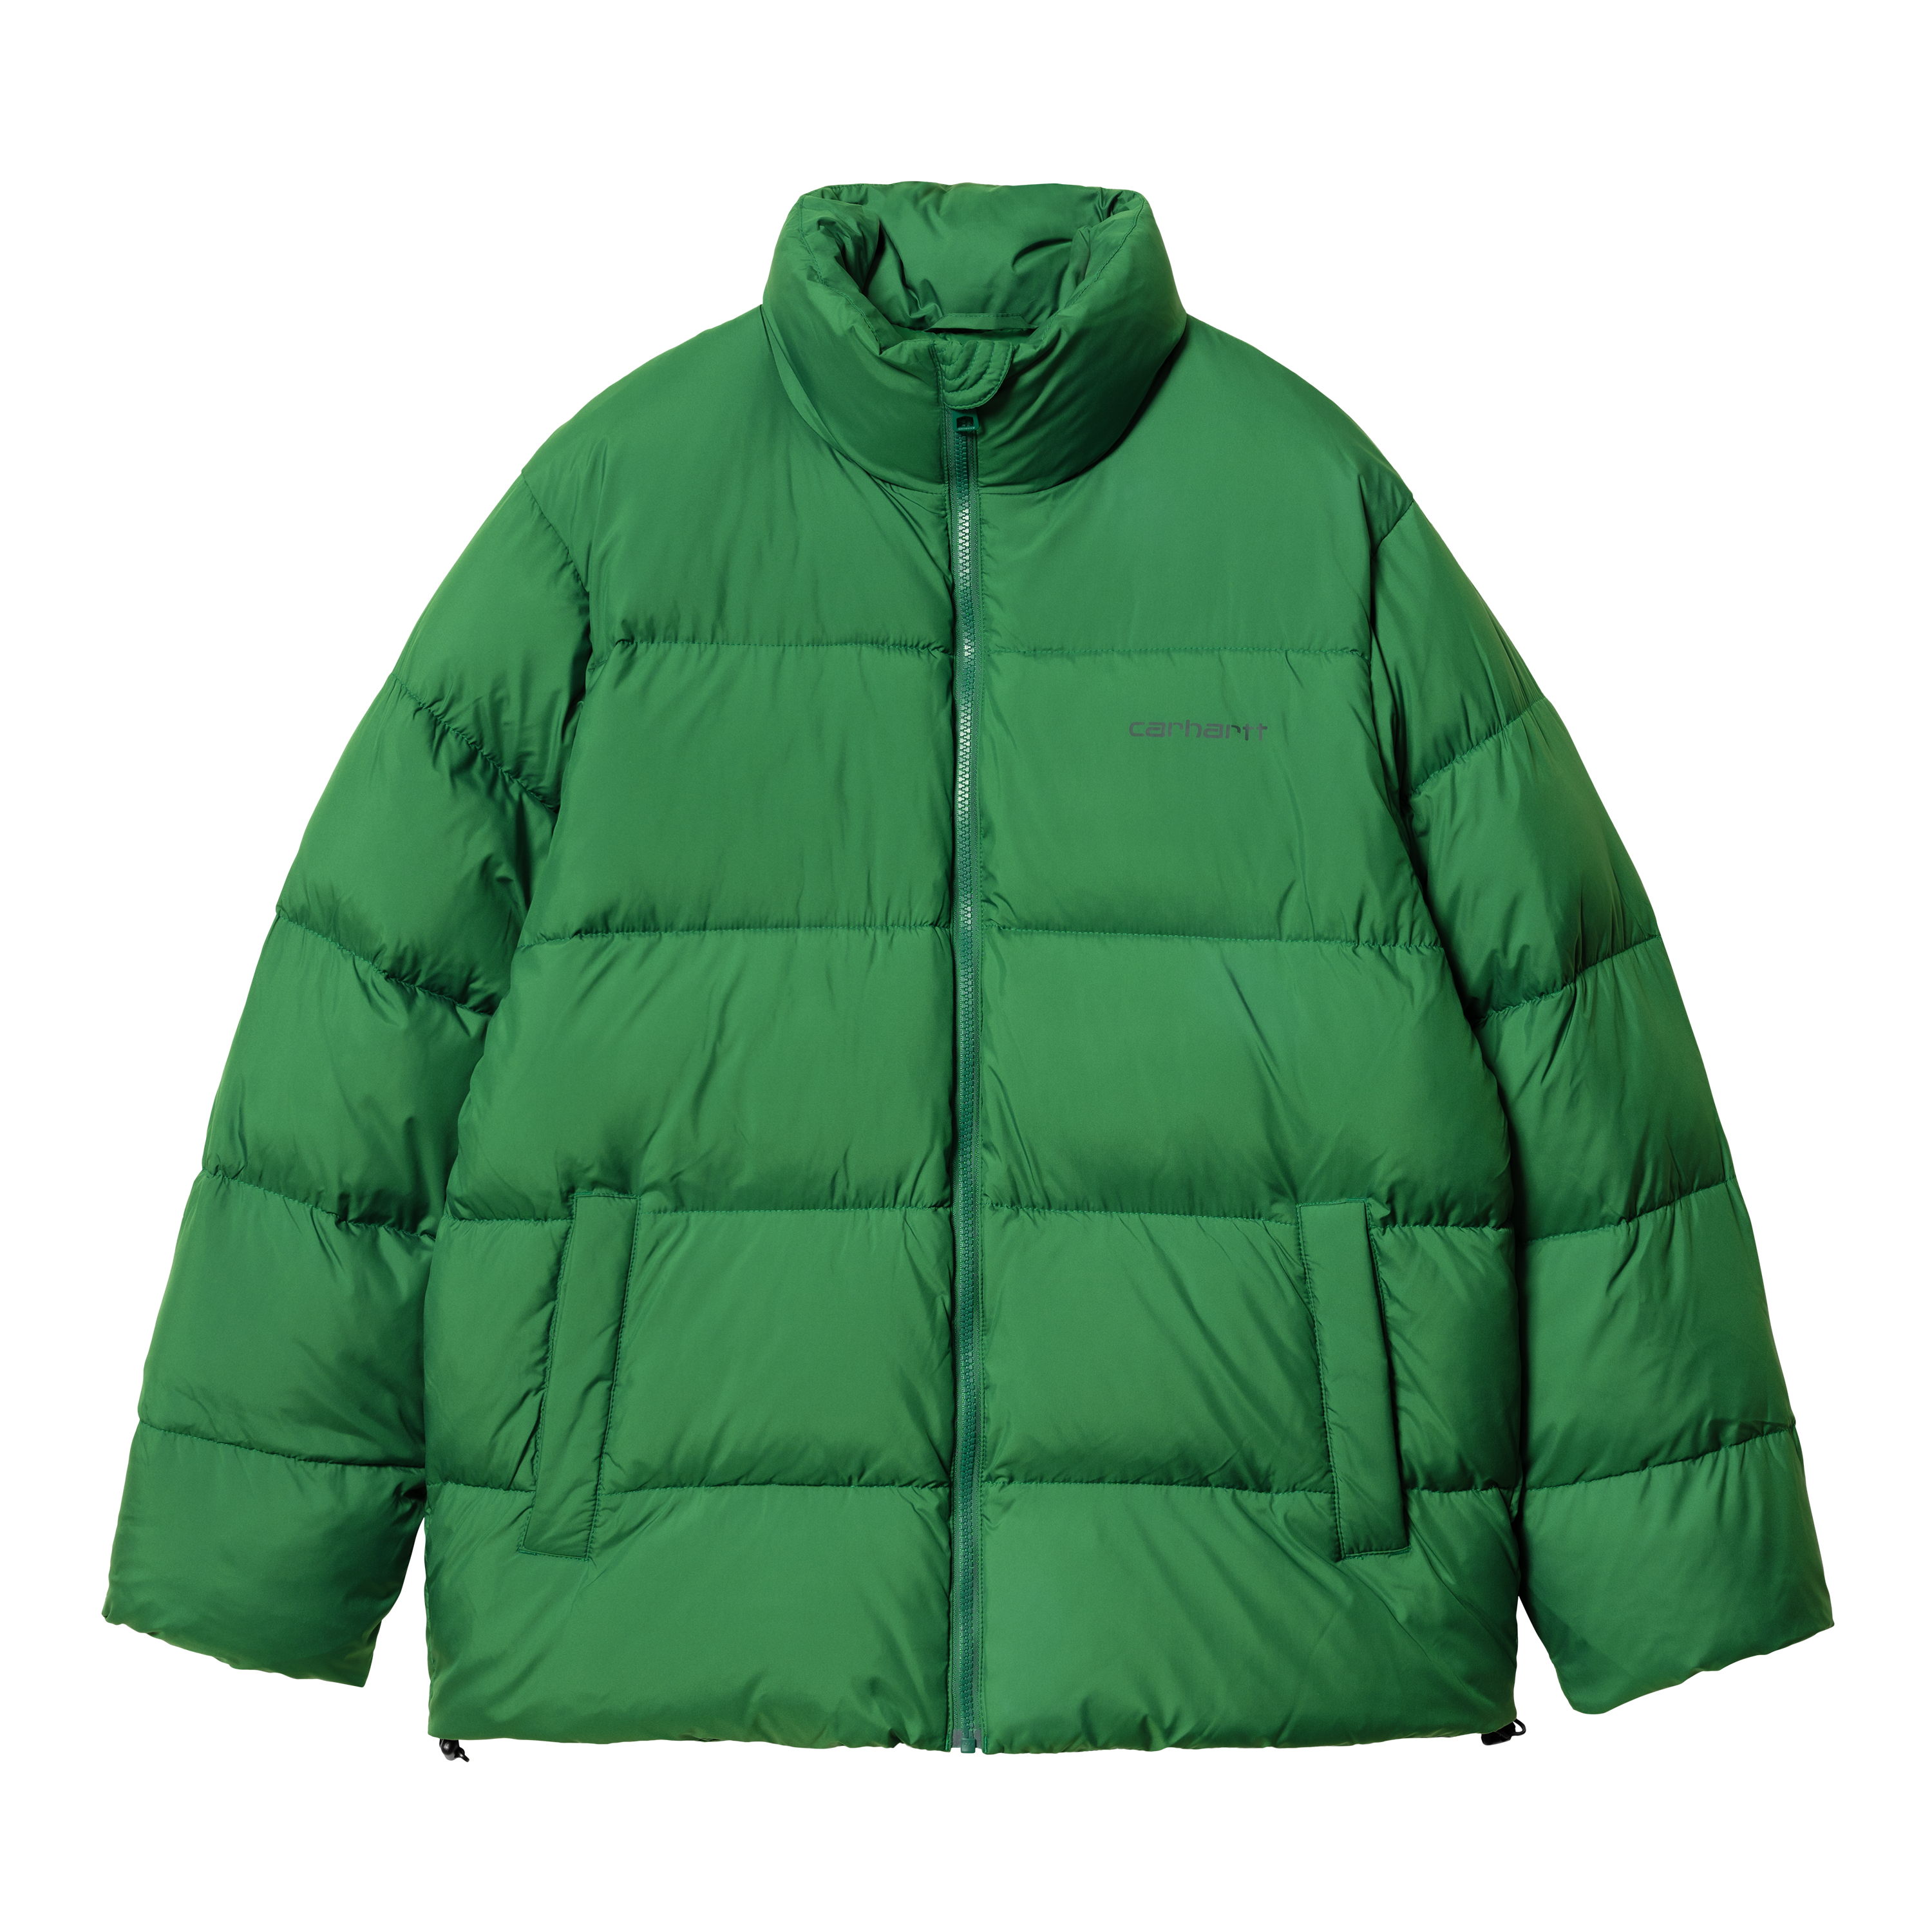 Carhartt WIP Springfield Jacket en Verde